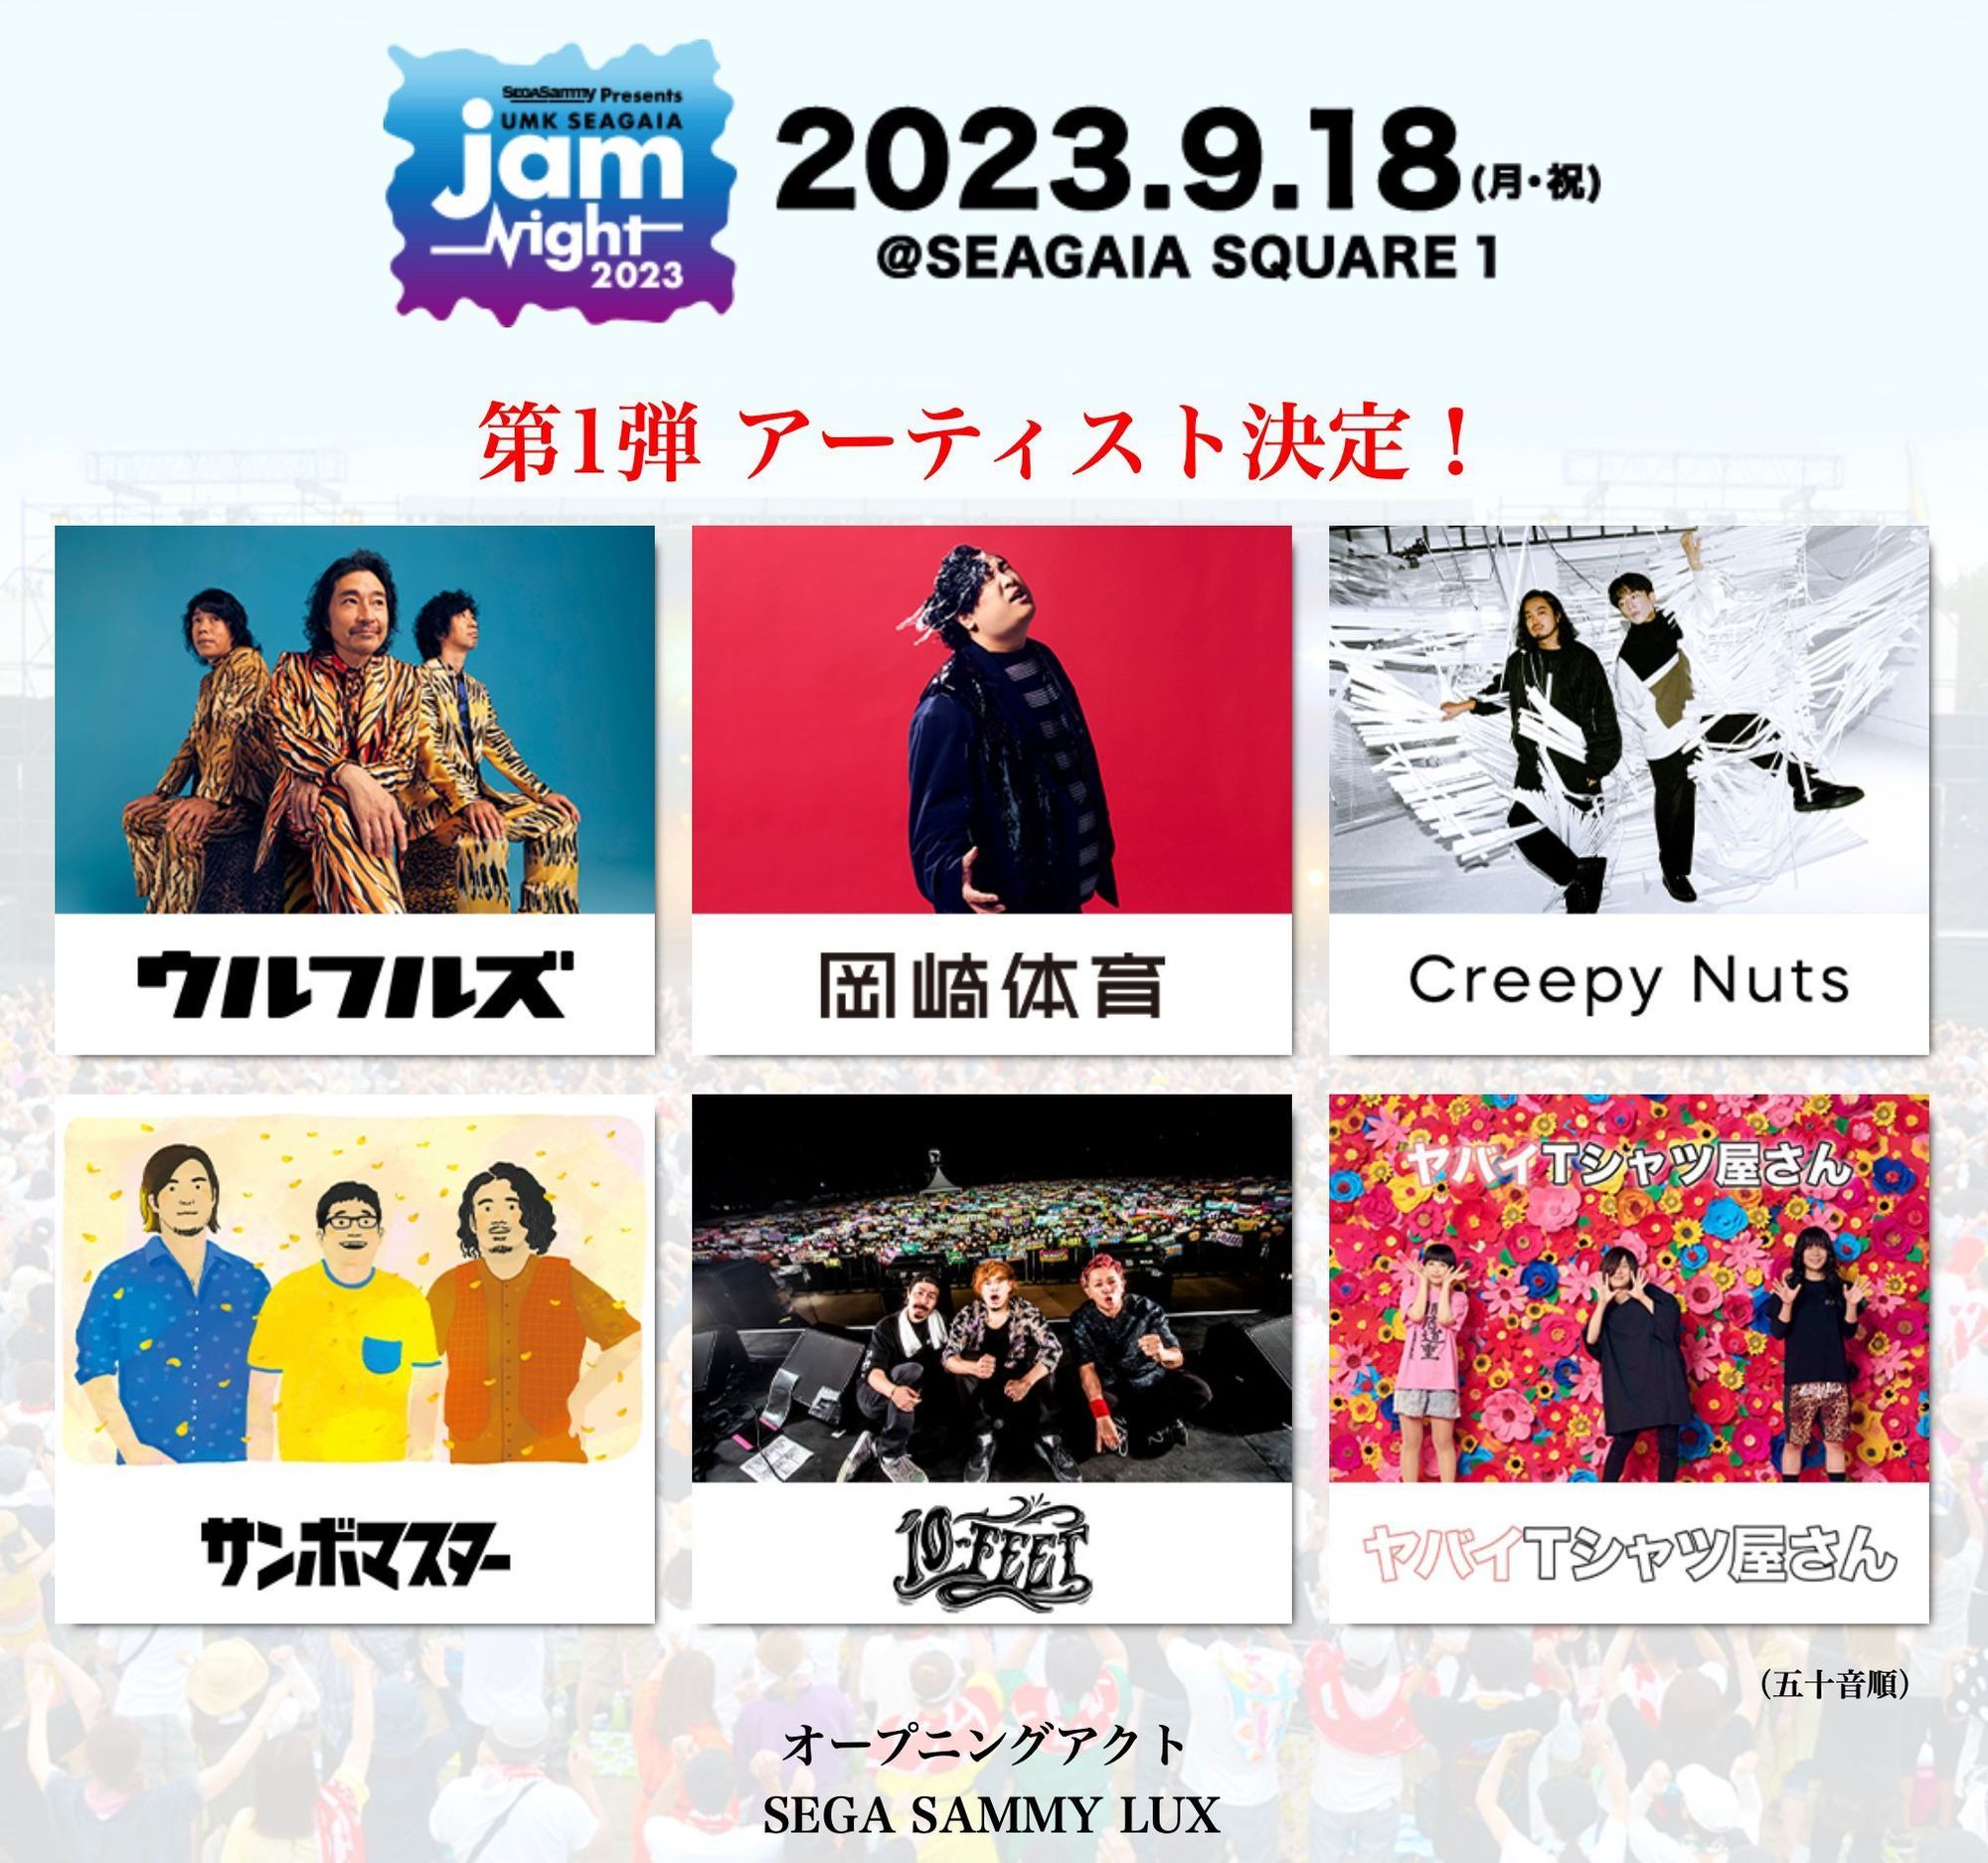 9.18(月・祝)　SEGA SAMMIY presents UMK SEAGAIA JamNight 2023（宮崎県宮崎市）